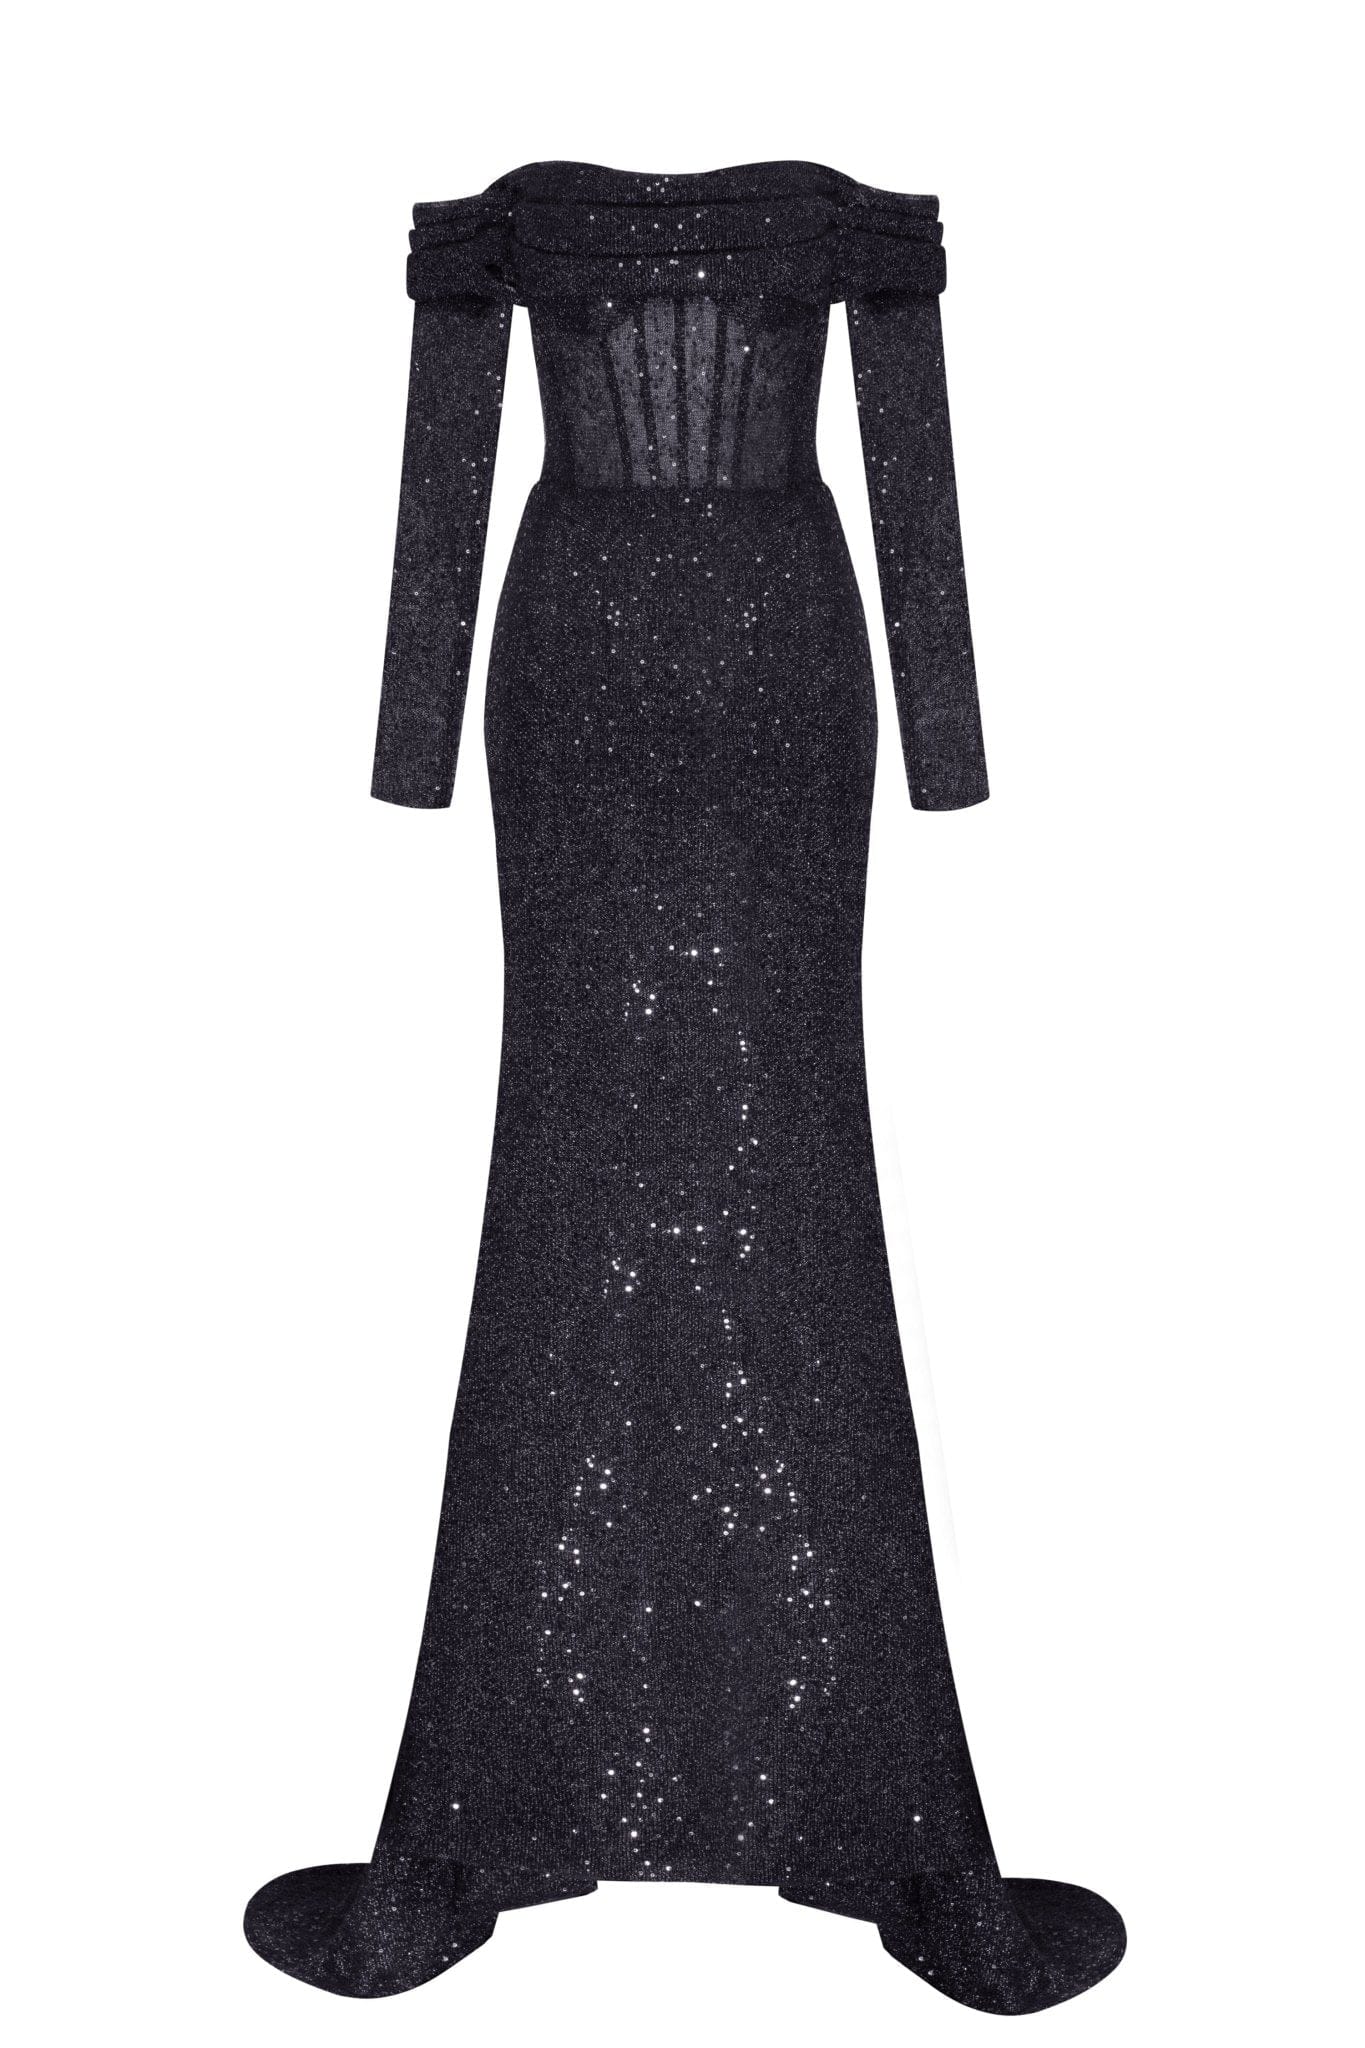 Designer Black And White Gown (Long Dress) - Zakarto